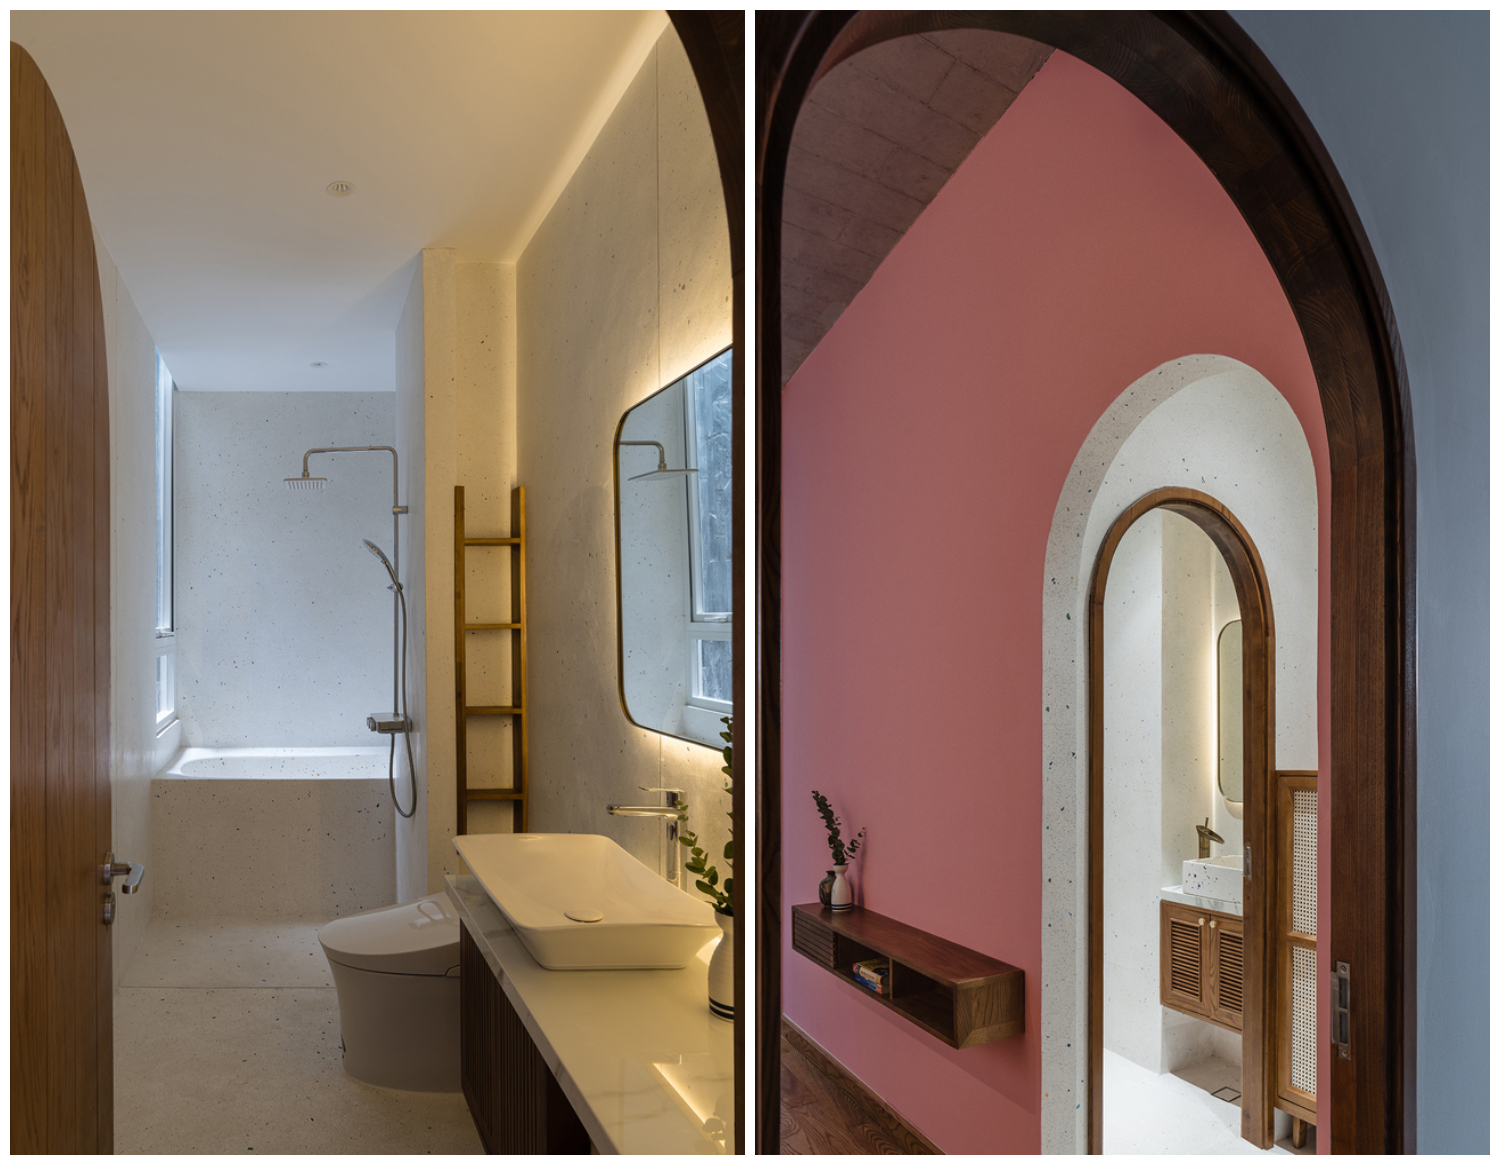 Phòng tắm vệ sinh trong nhà ống Sài Gòn được bài trí vô cùng tinh tế với những mảng nhấn màu sắc bắt mắt, tạo cảm giác thư thái cho người dùng.